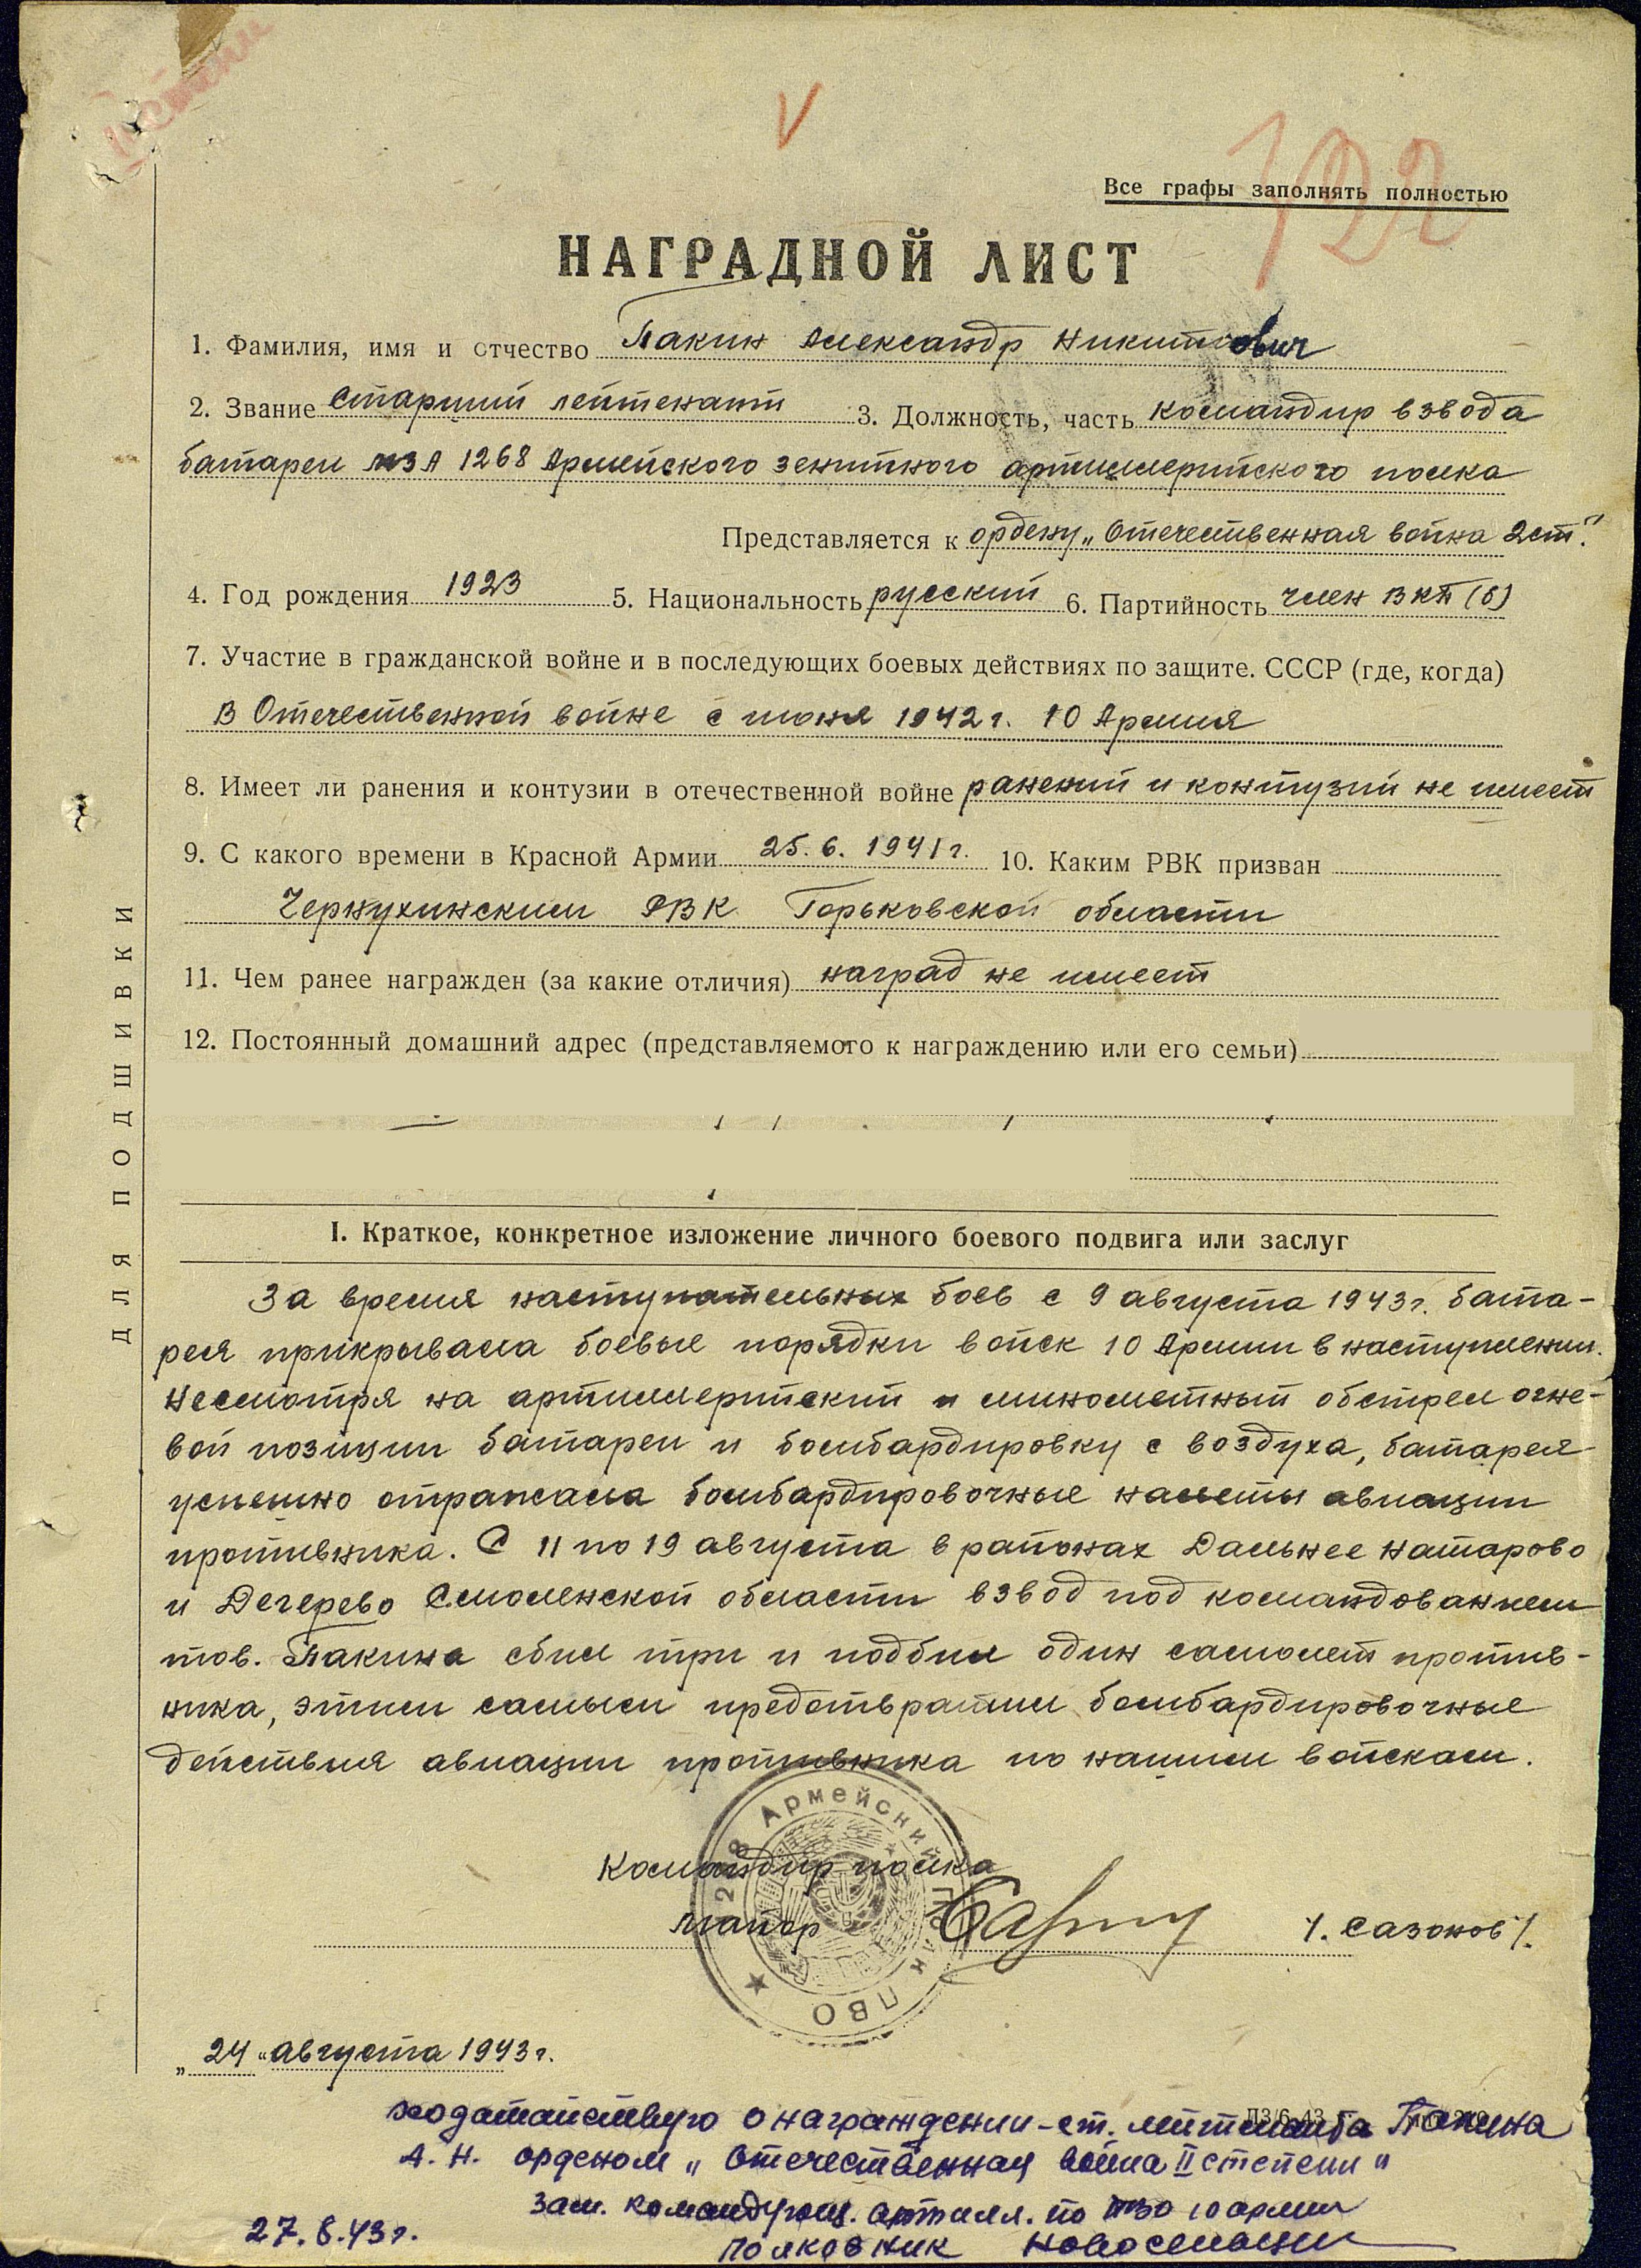 Наградной лист Пакина Александра Никитовича о представлении к награждению орденом Отечественной войны II степени